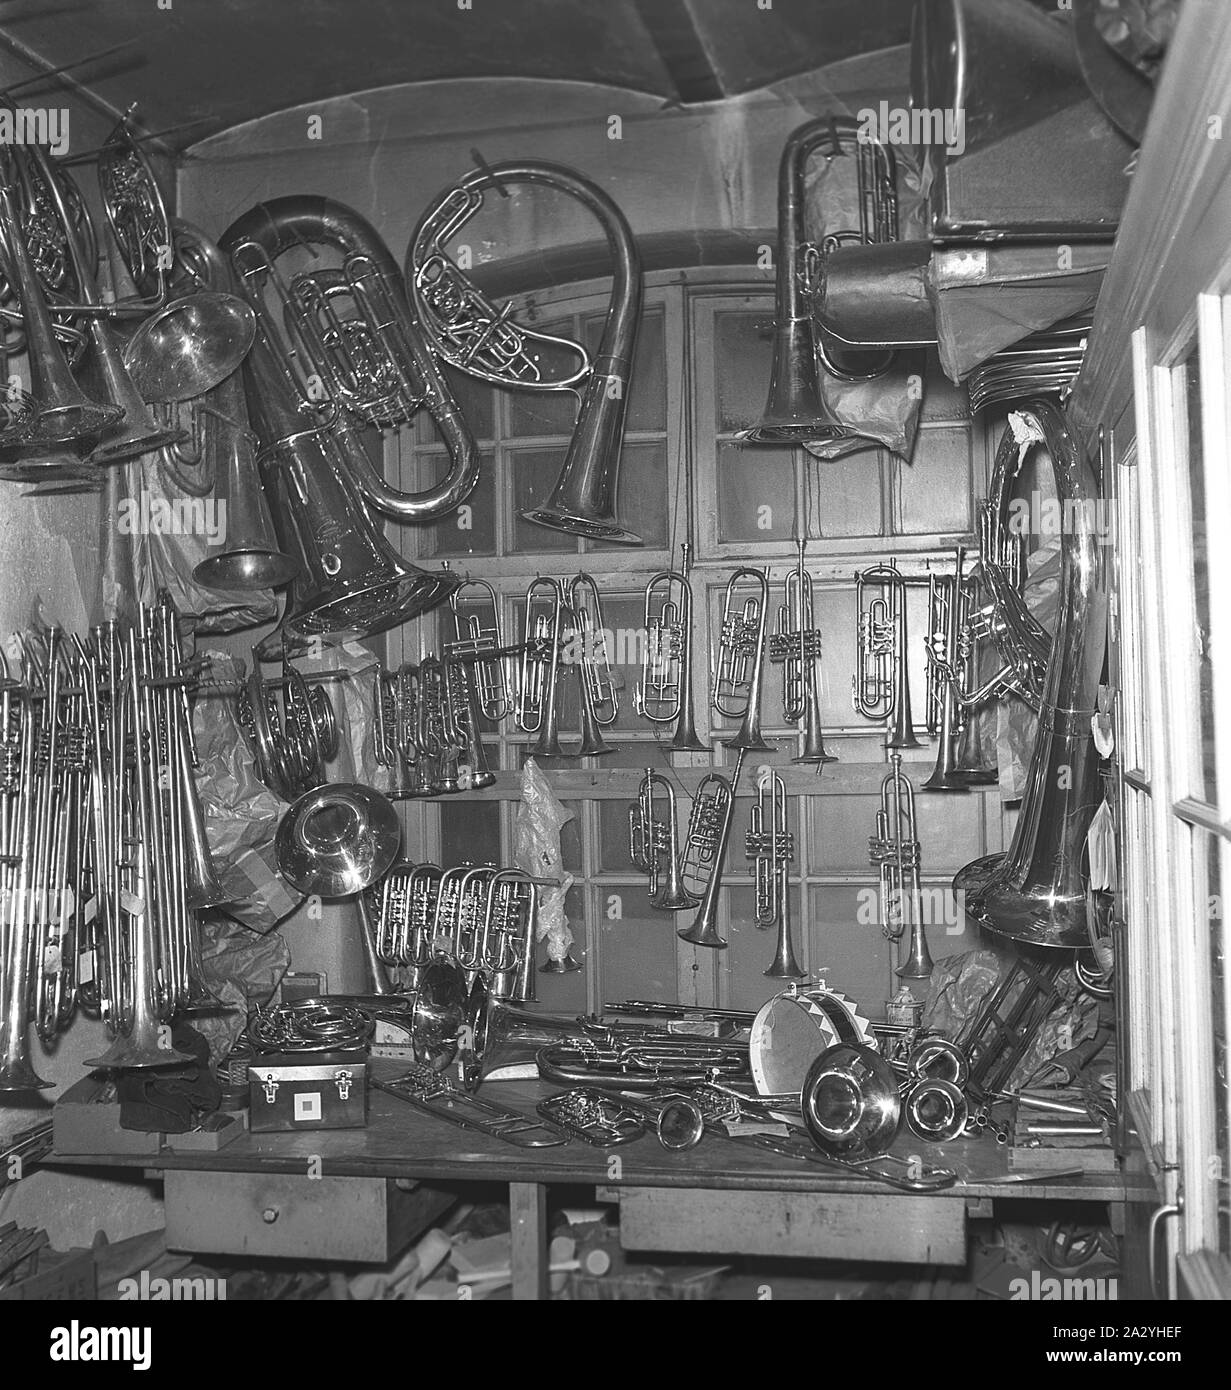 Die Arbeiter in den 1940er Jahren. Innenraum eines mechanischen Werkstatt für Musikinstrumente. Messing Musikinstrumente in verschiedenen Formen und Größen gesehen werden, die an den Wänden. Schweden 1941 Kristoffersson Ref. 225-7 Stockfoto